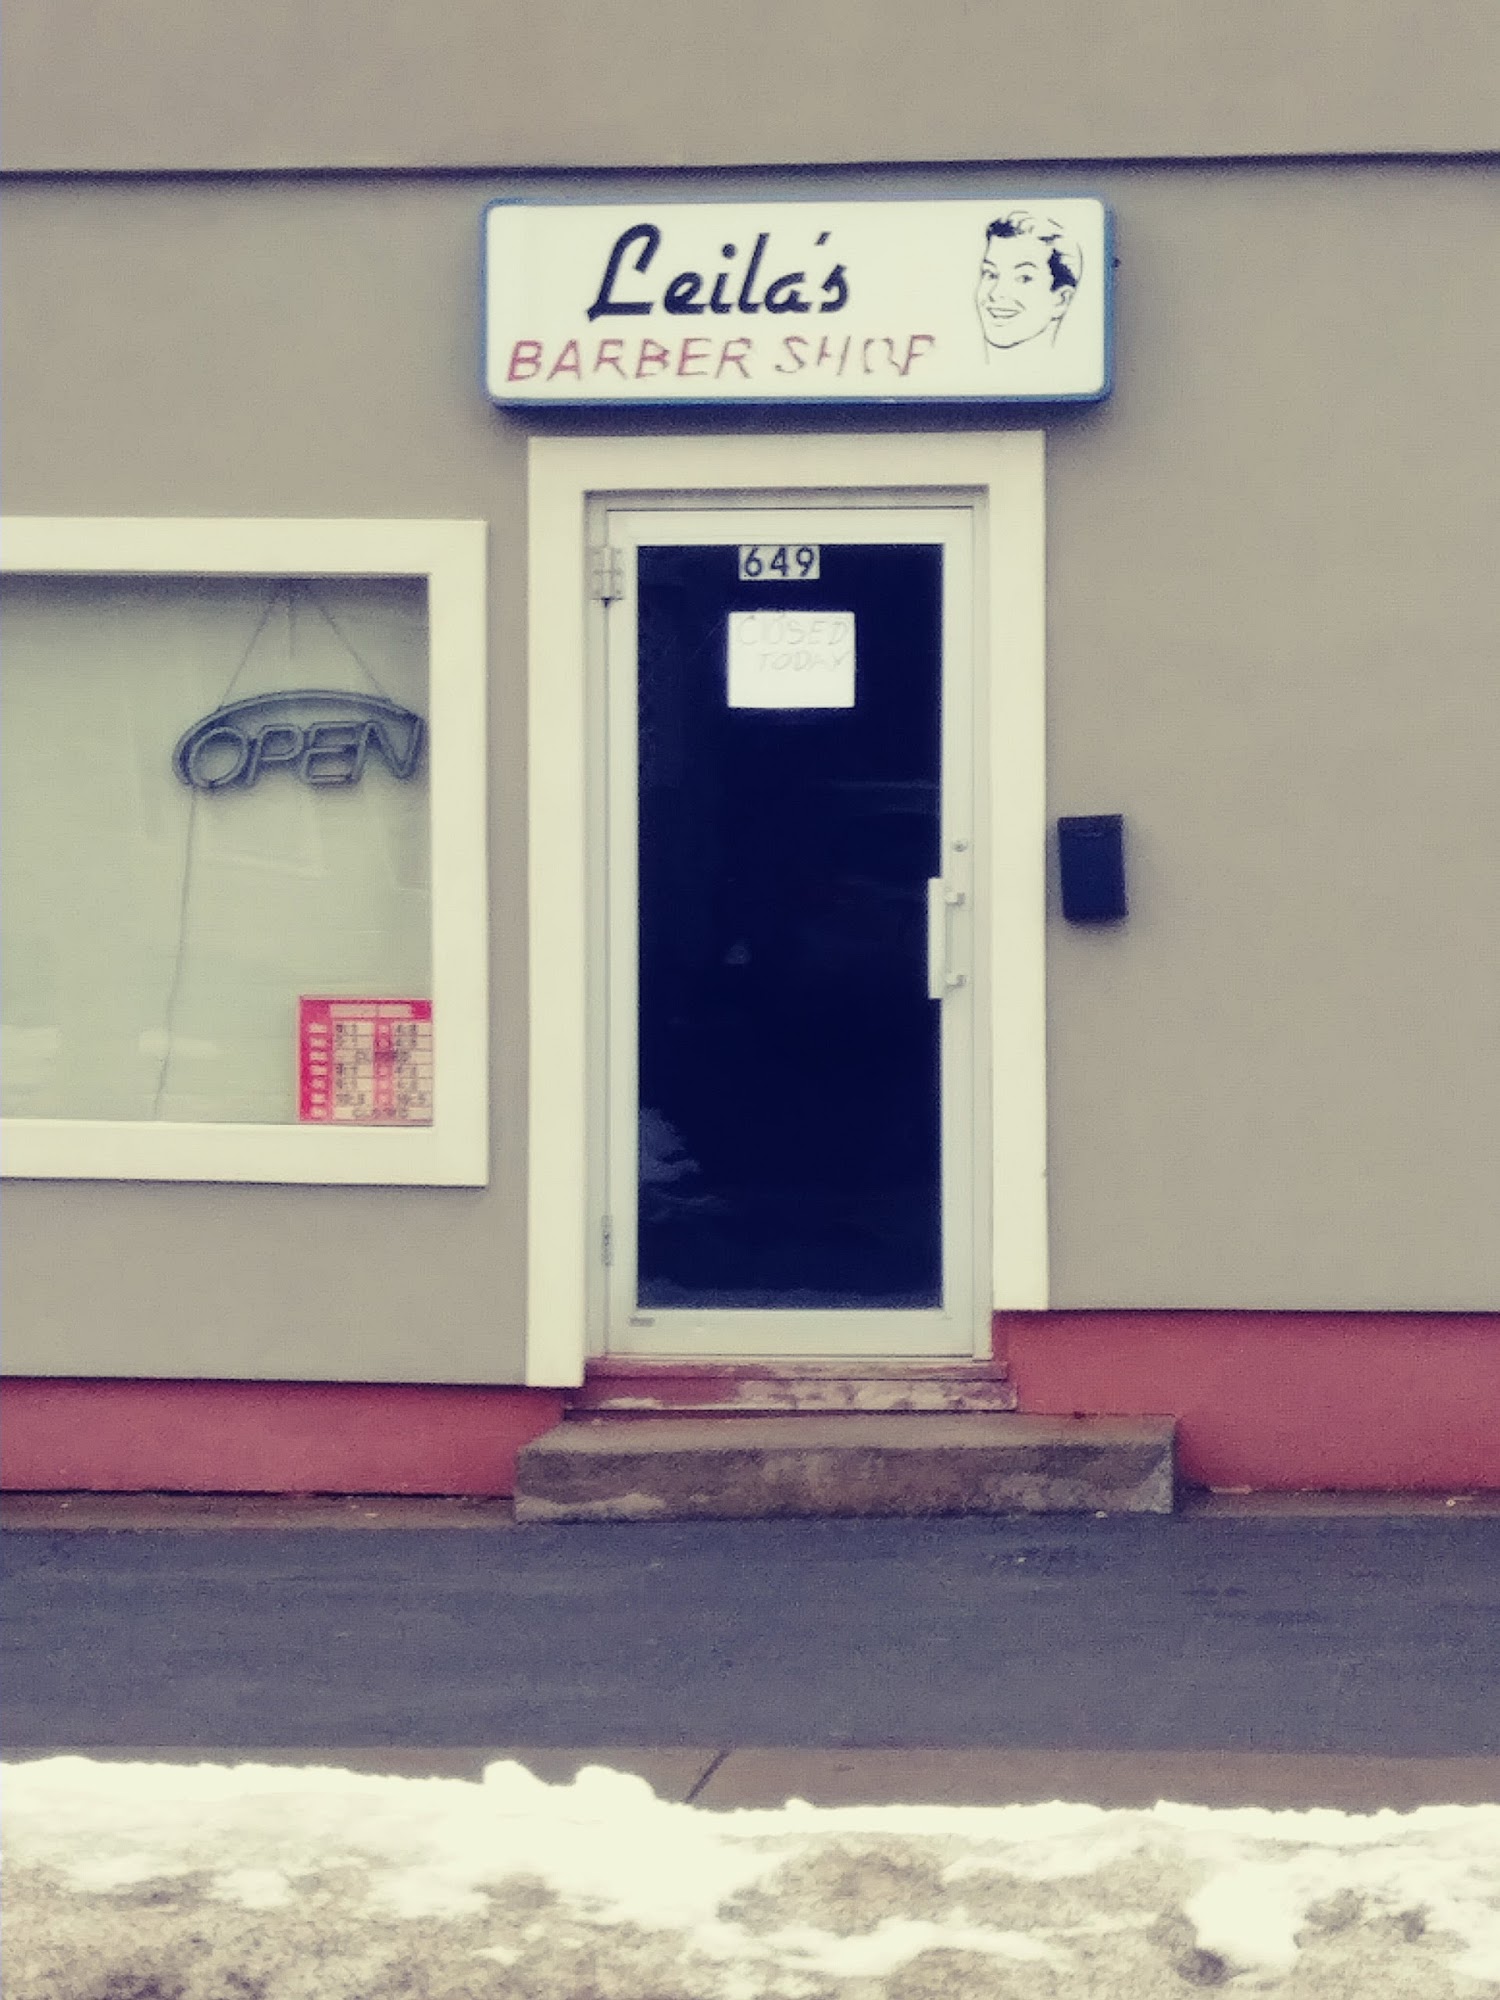 Leila Barber Shop